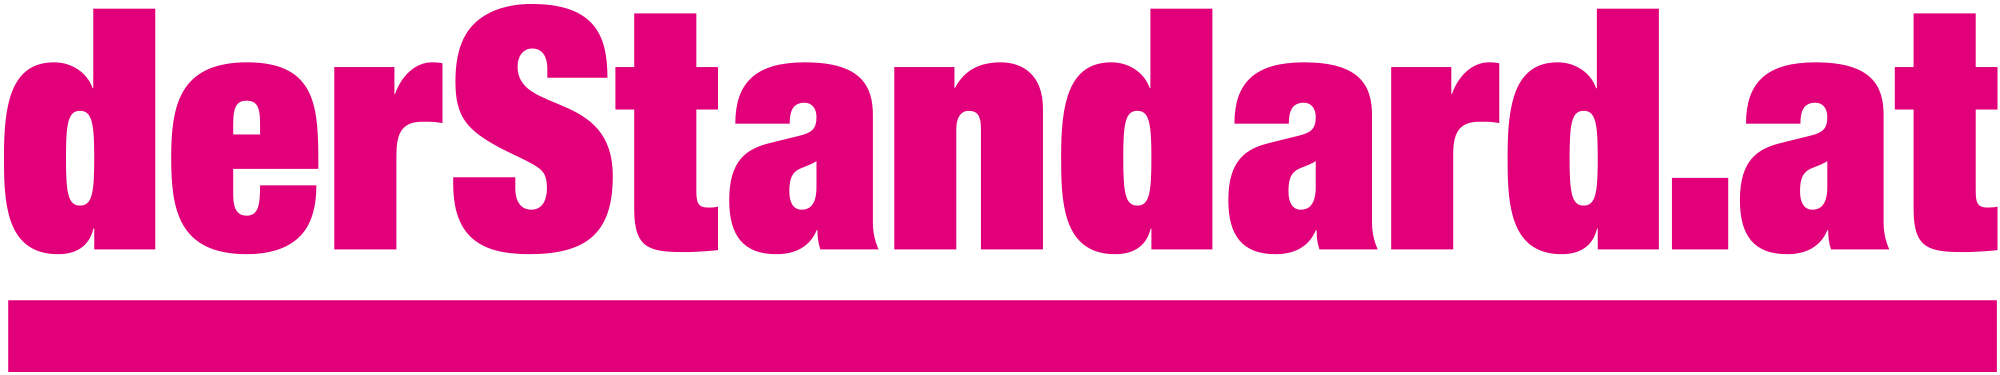 Tageszeitung der Standard Logo